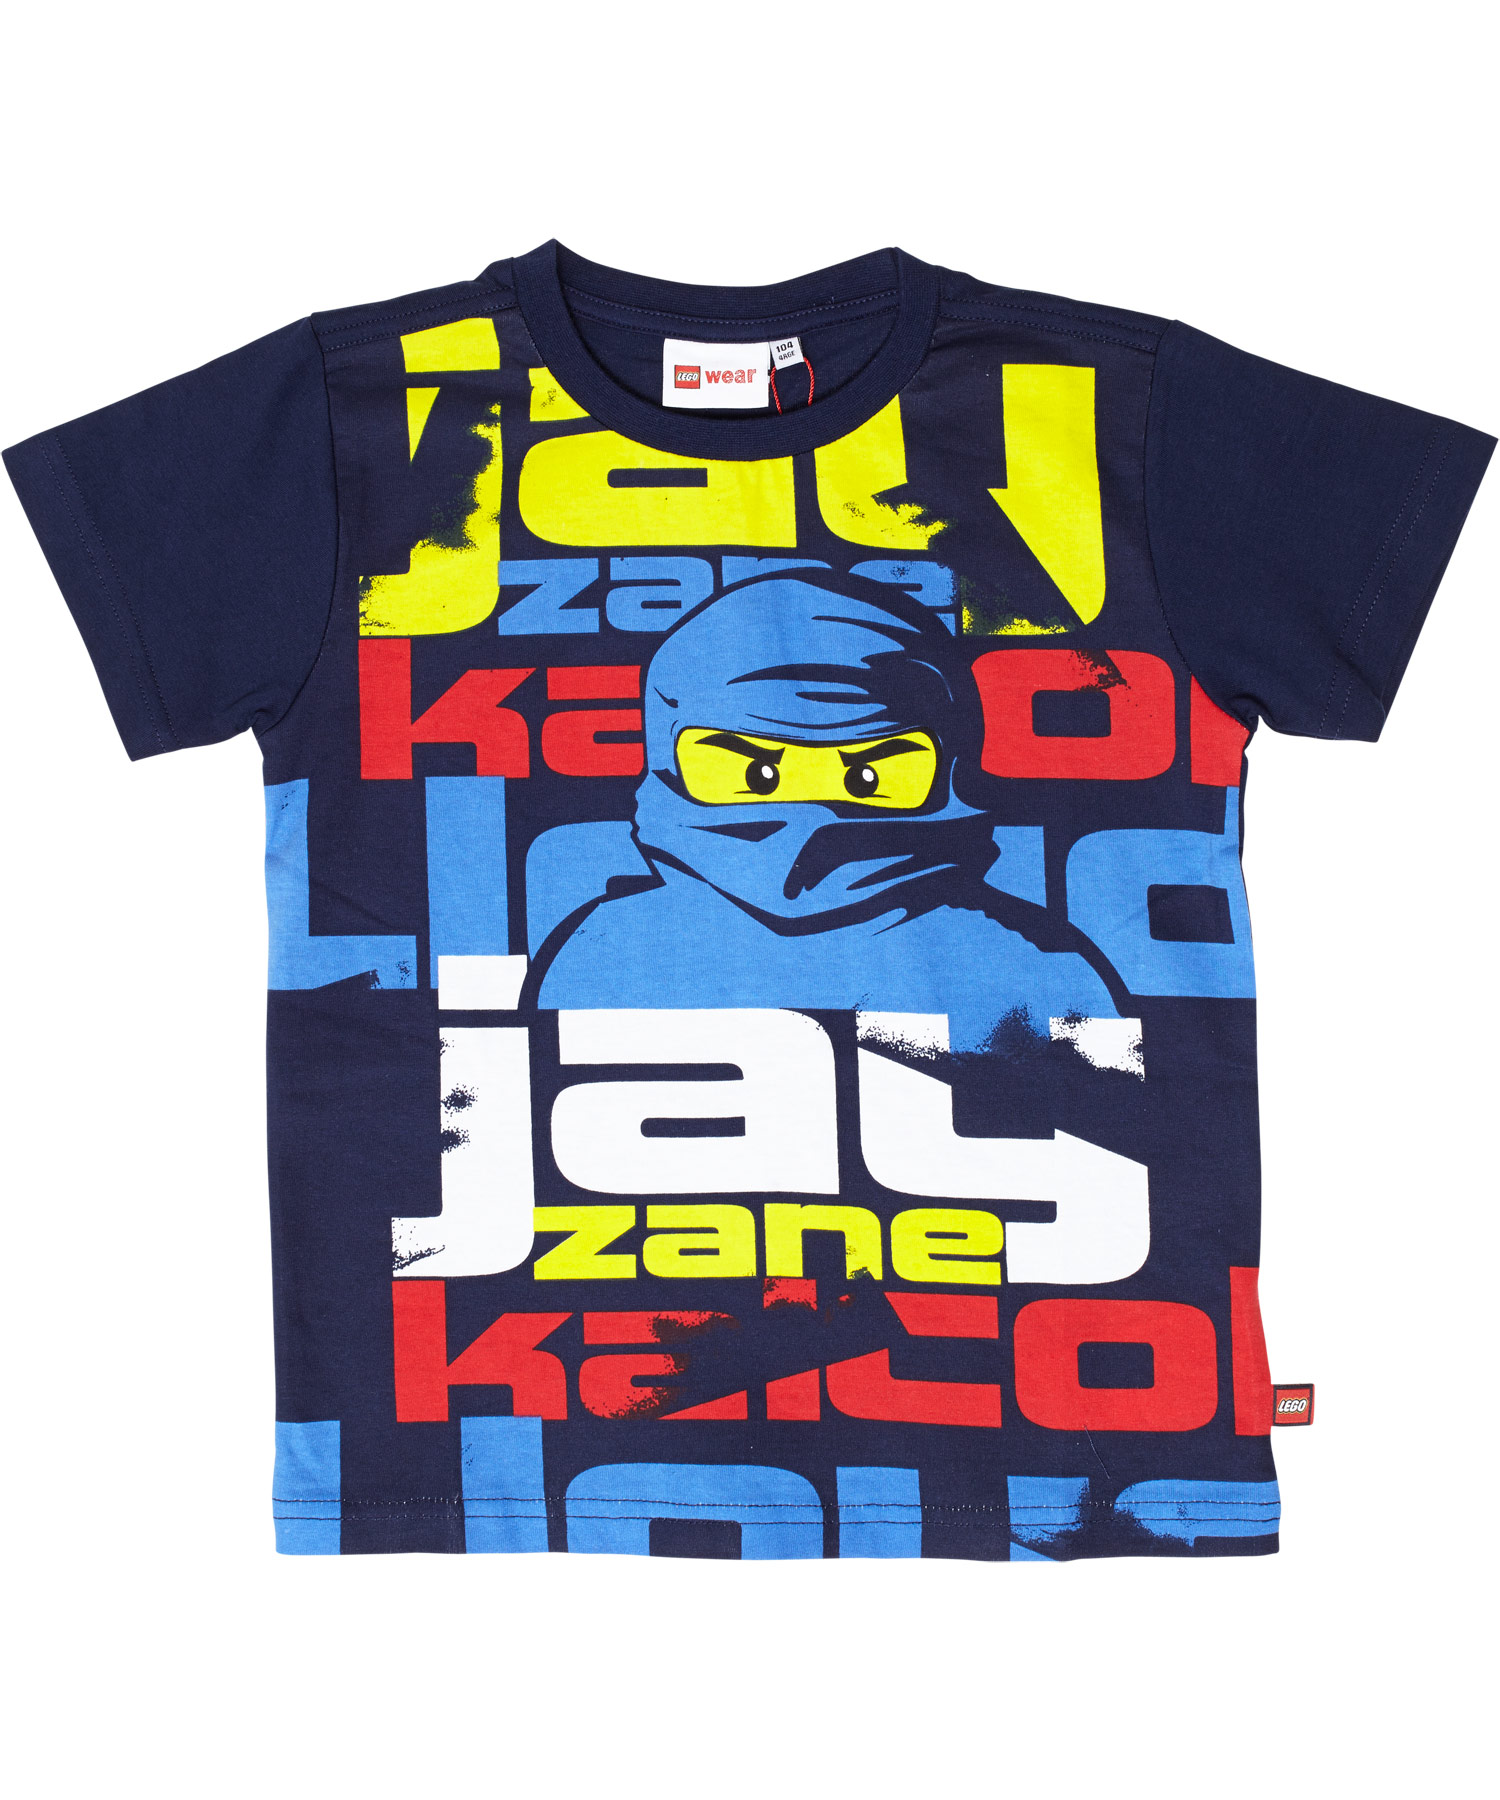 New! LEGO navy ninja blue t-shirt the with Jay, Ninjago